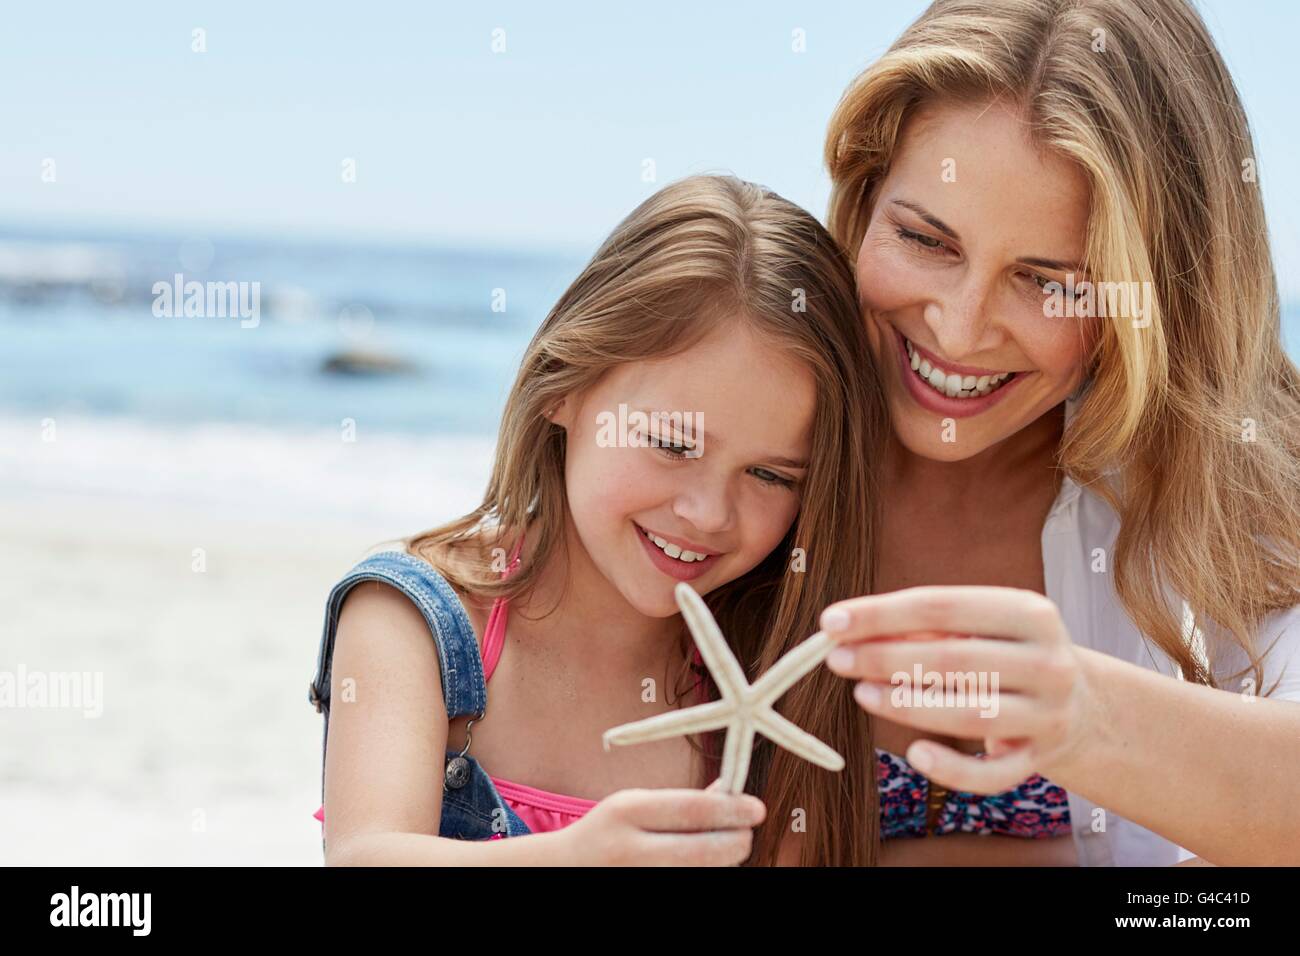 Modelo liberado. Hija de madre con la celebración de una estrella de mar. Foto de stock